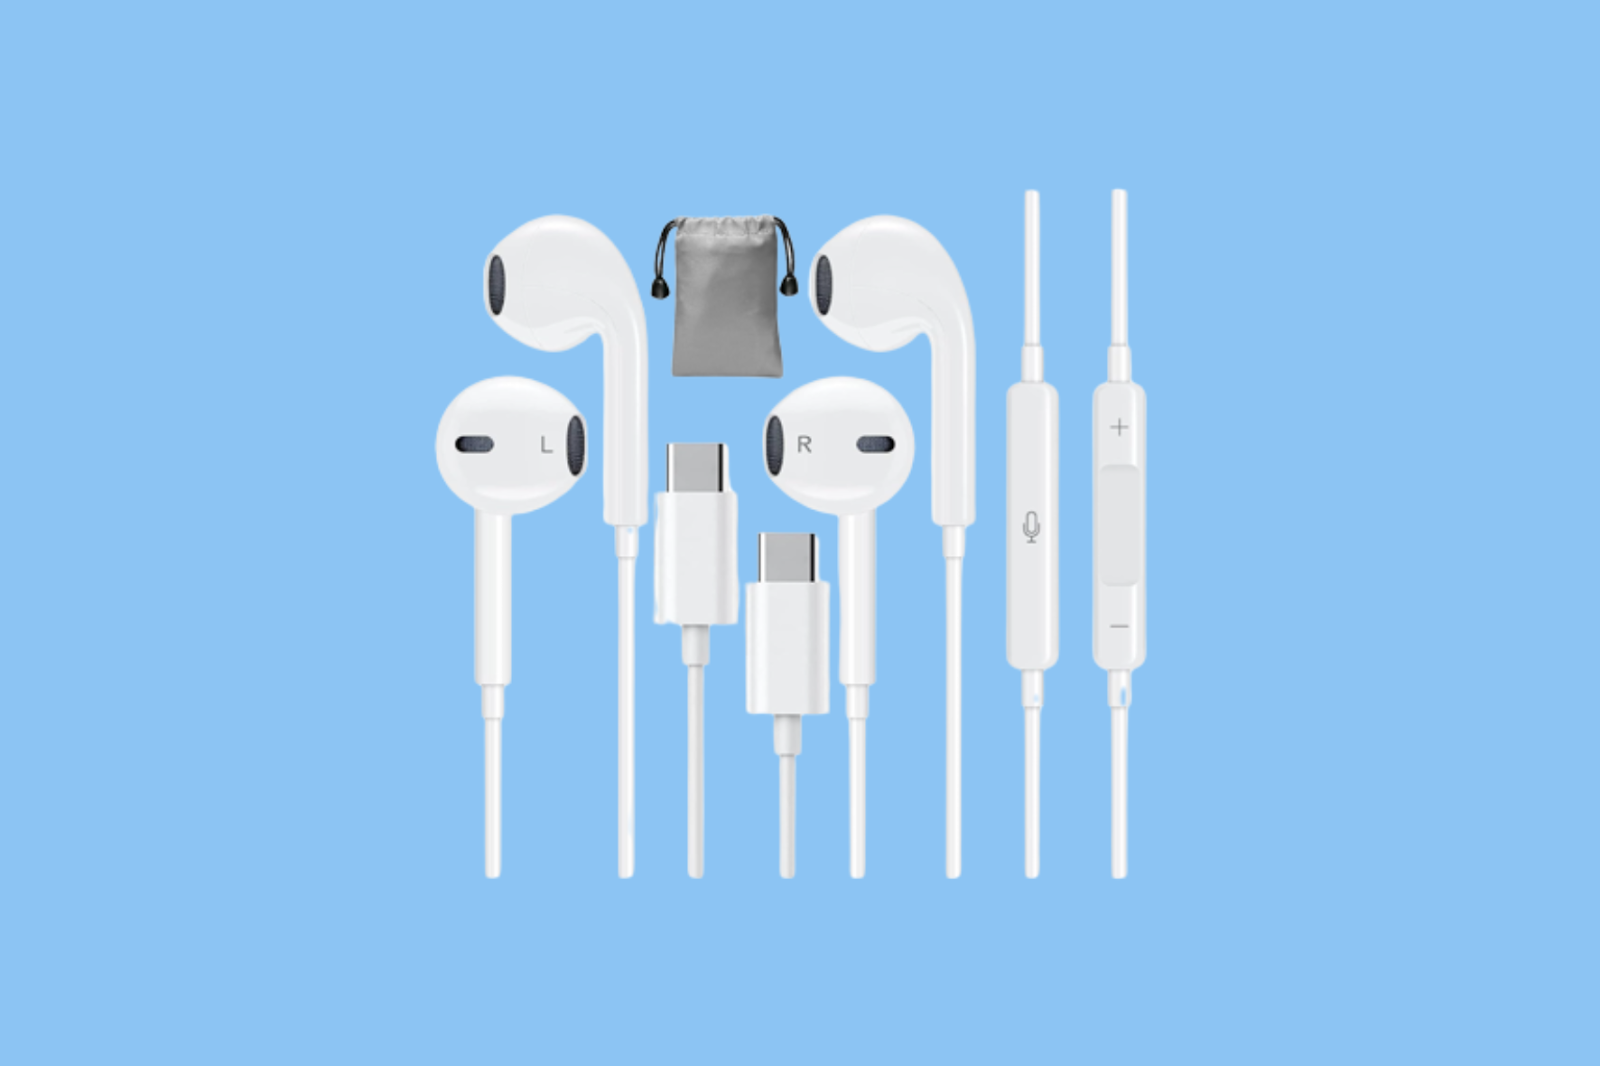 USB C wired headphones